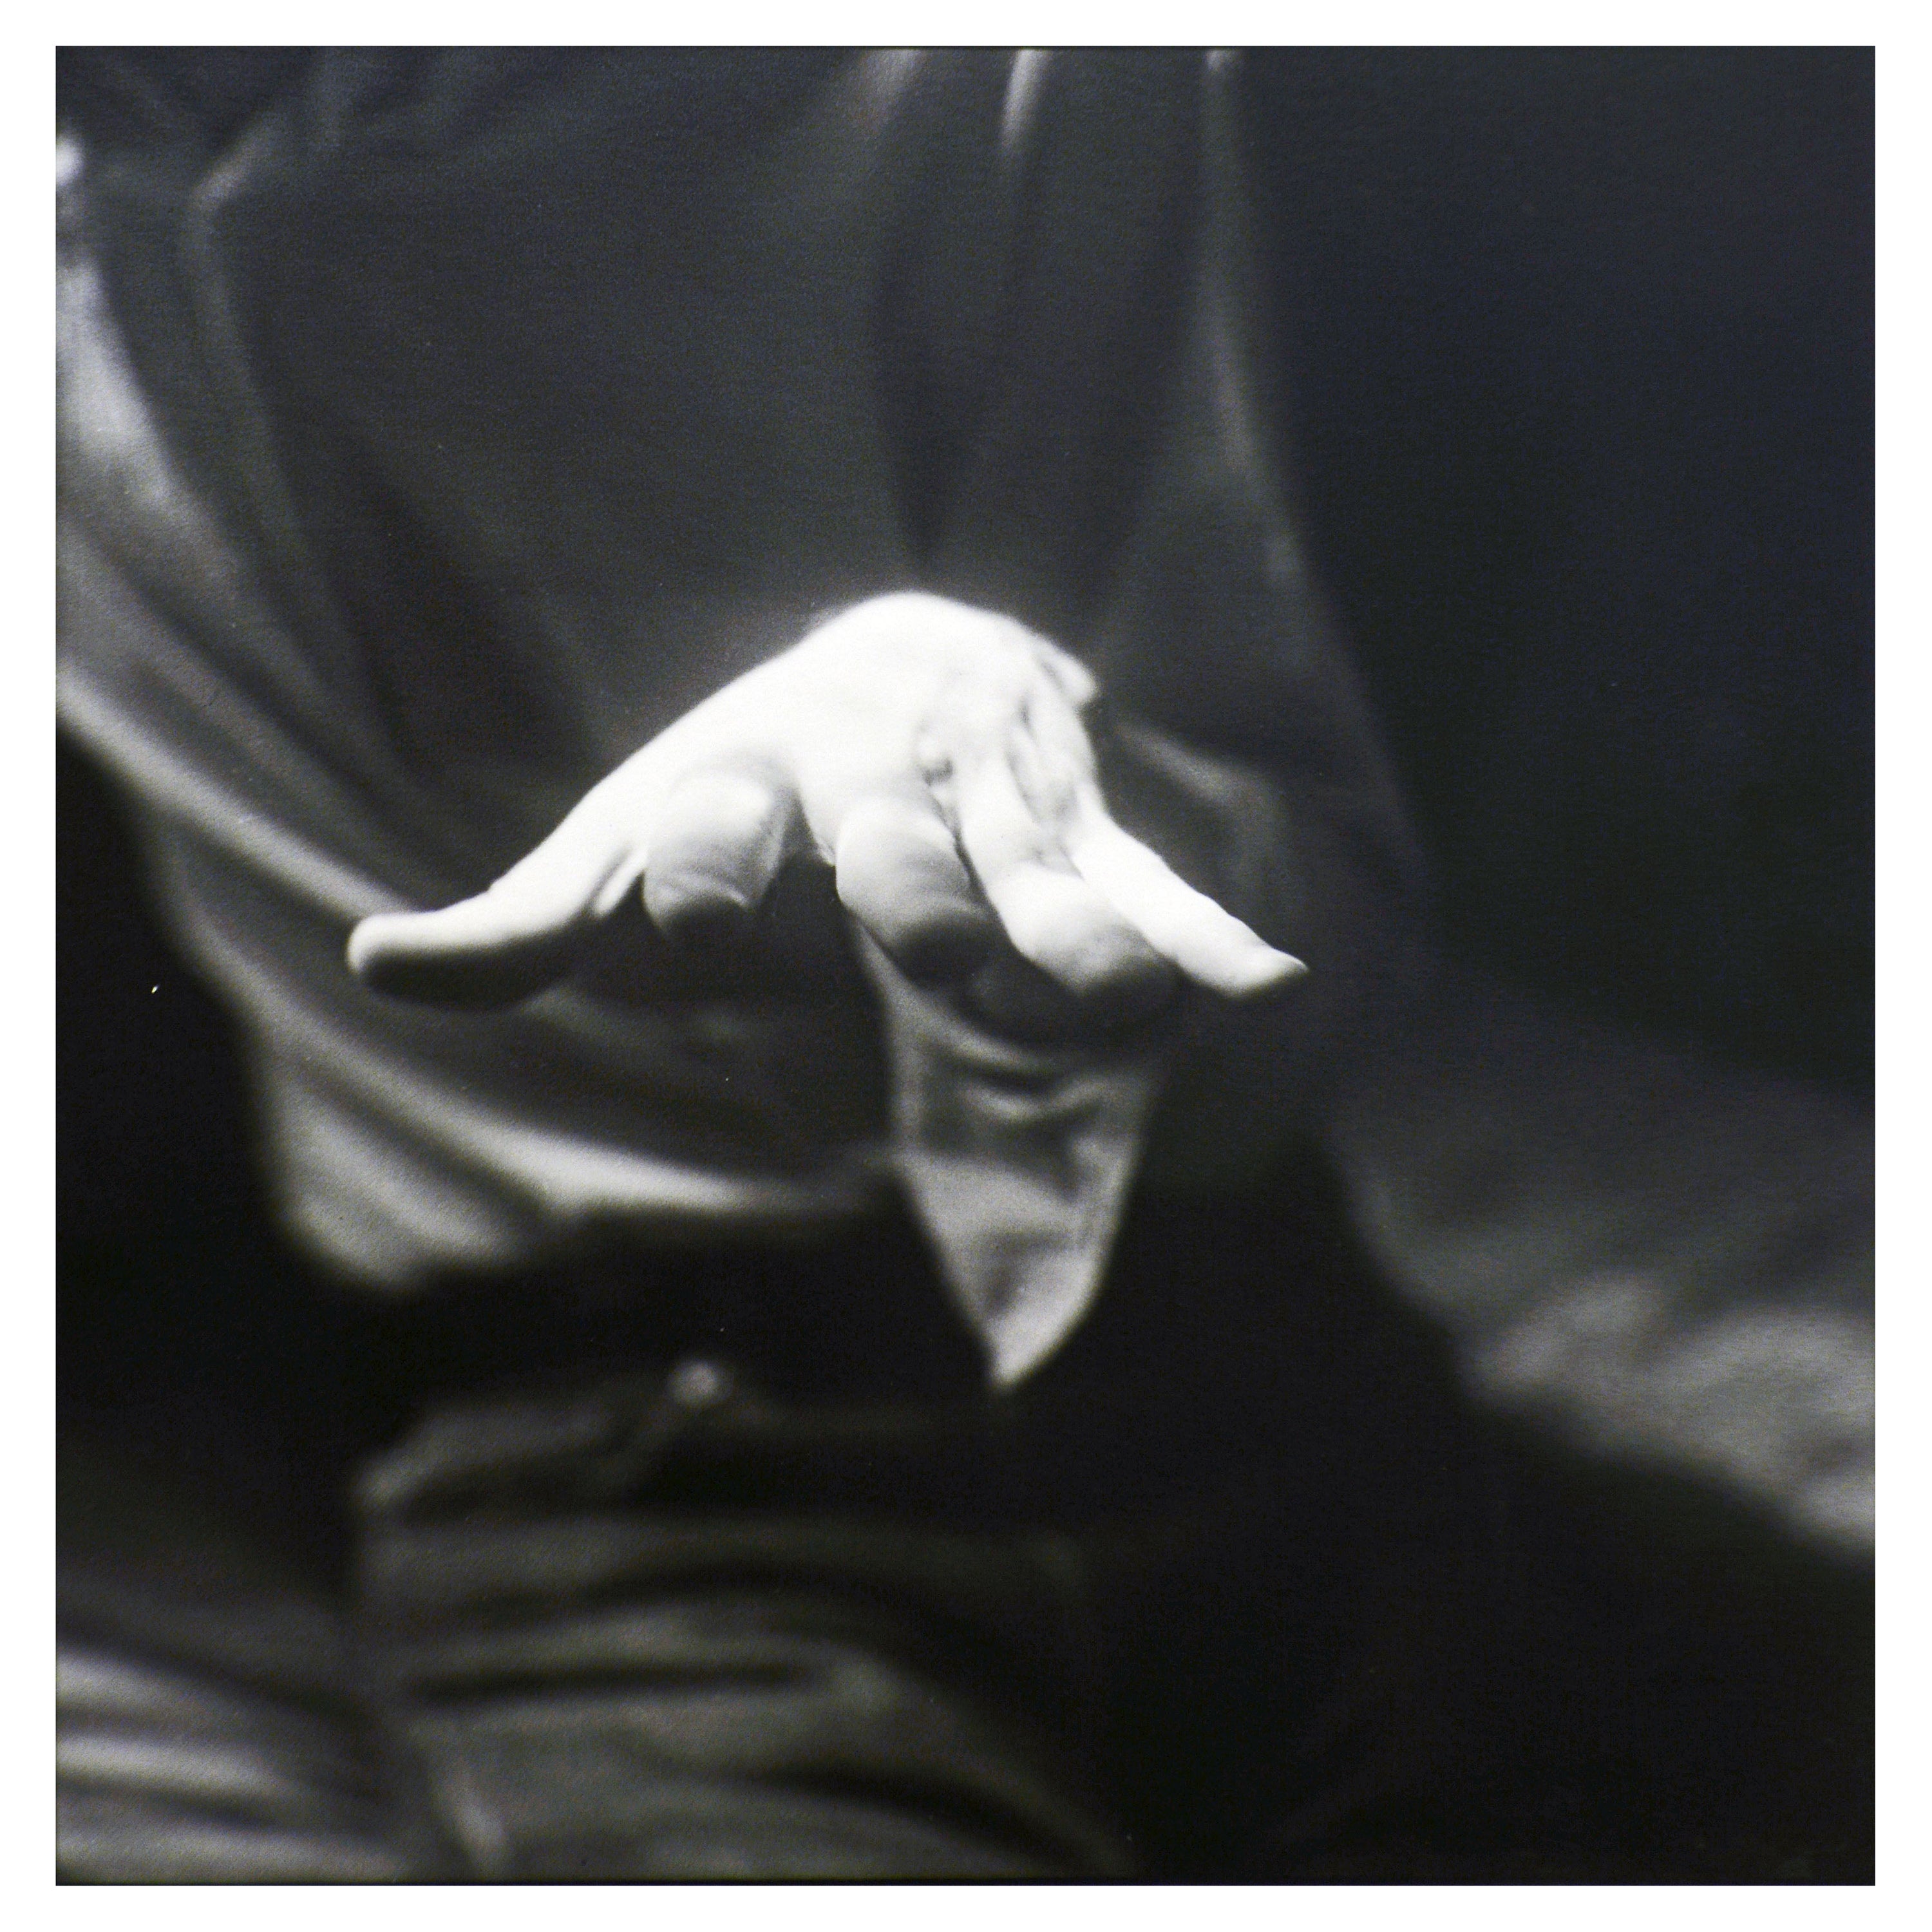 Schwarz-Weiß-Kunstfotografie einer Hand, signiert, nummeriert und unleserlich betitelt